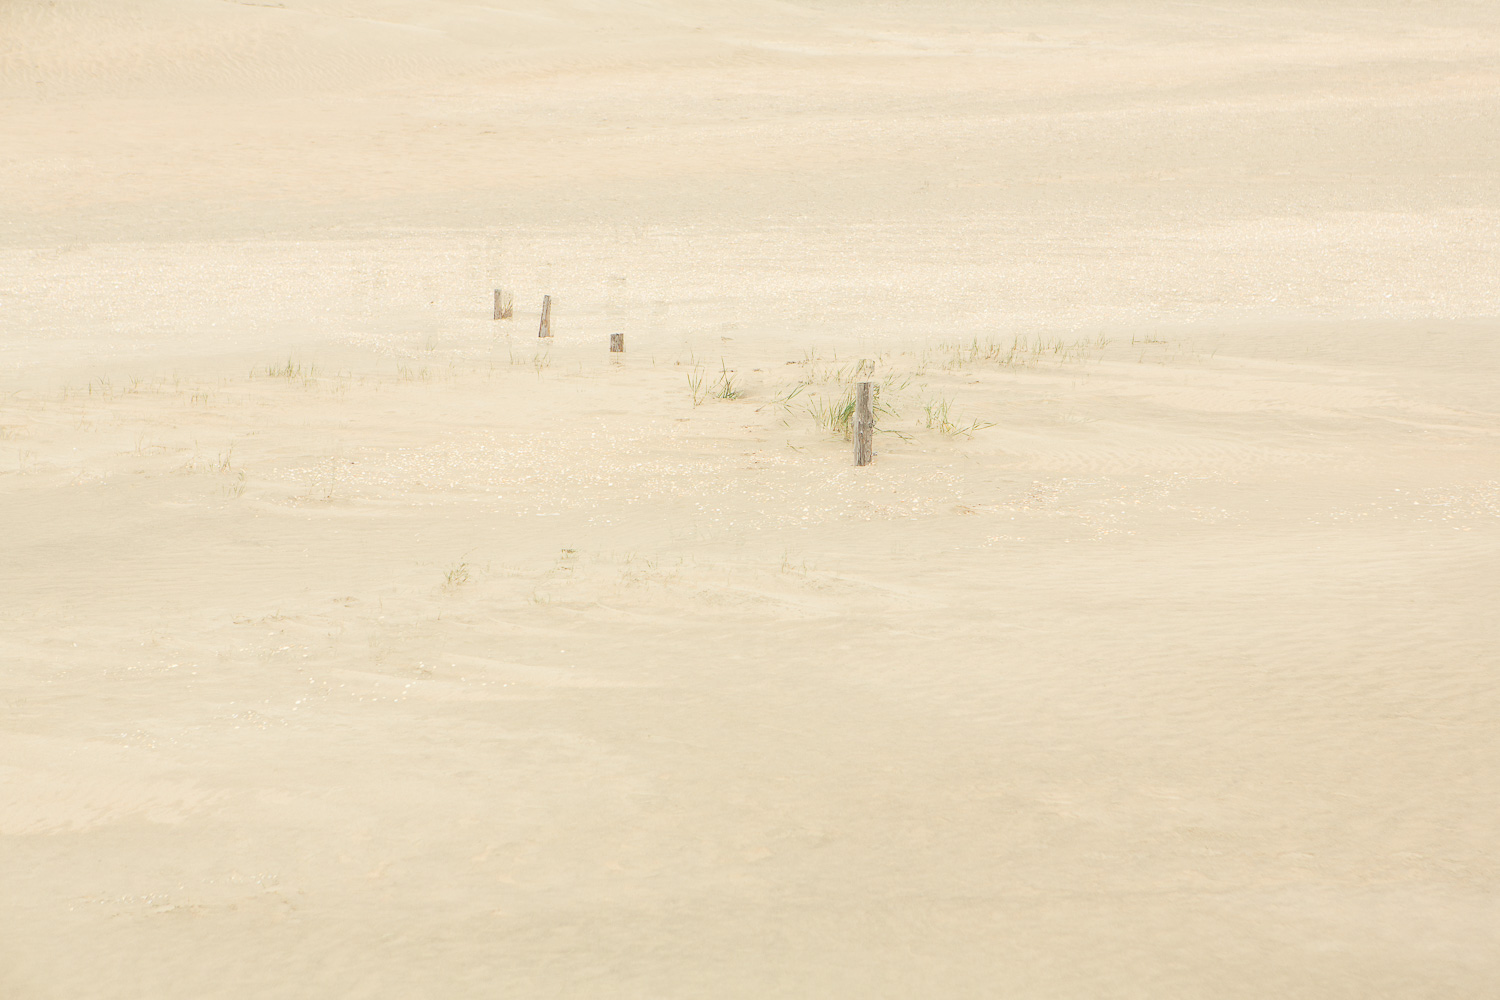  Dunes II, 2016 //  120 x 180 cm  